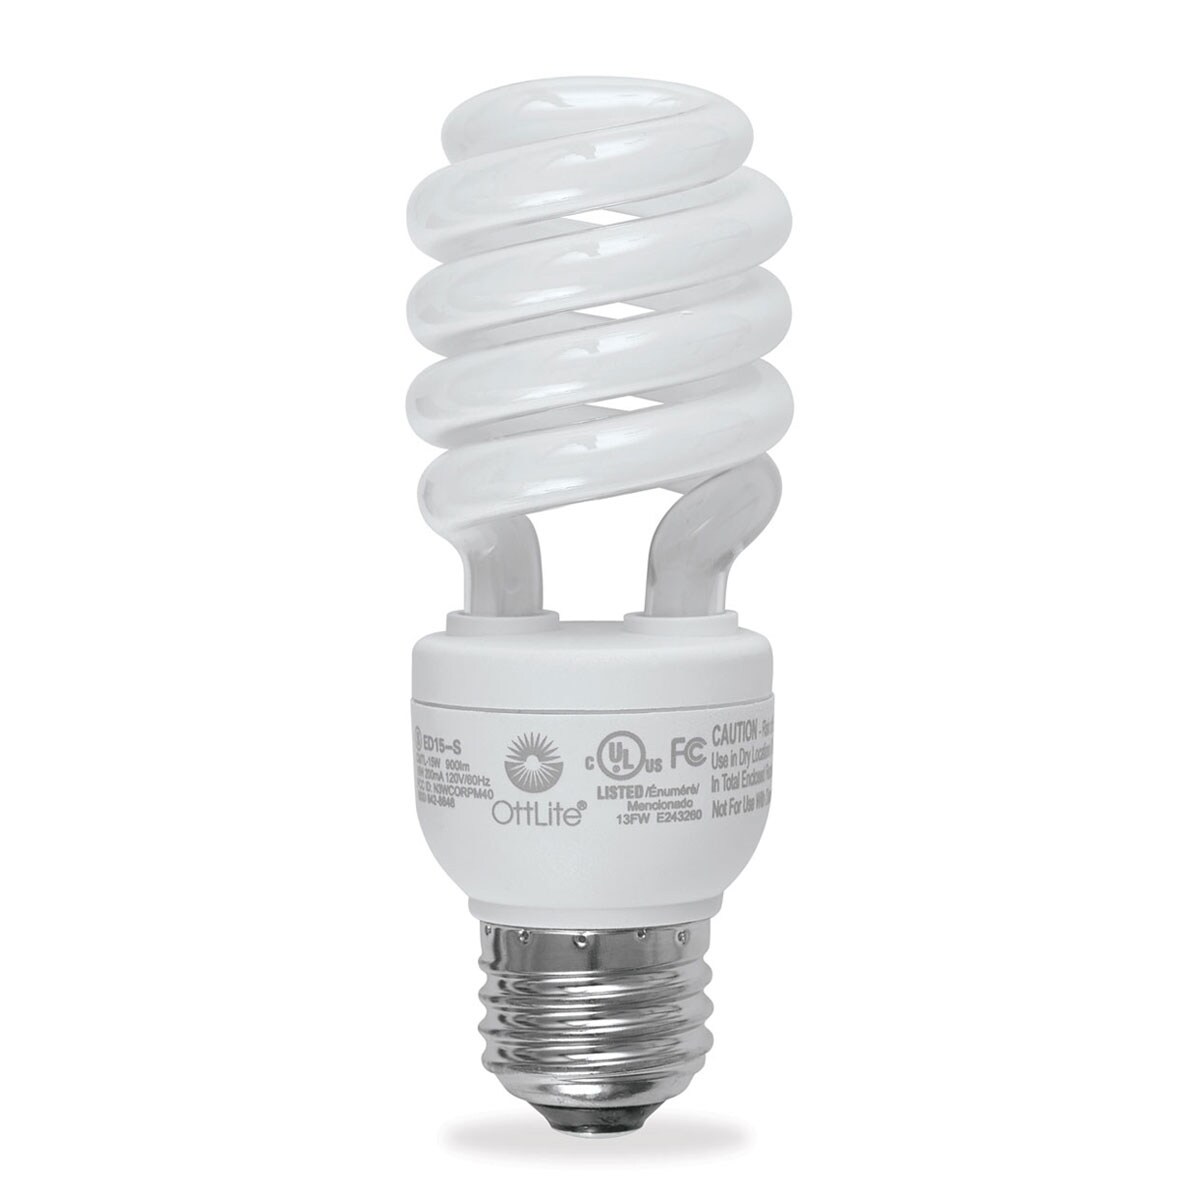 OttLite Natural Daylight Edison Swirl Light Bulb - 15 Watt